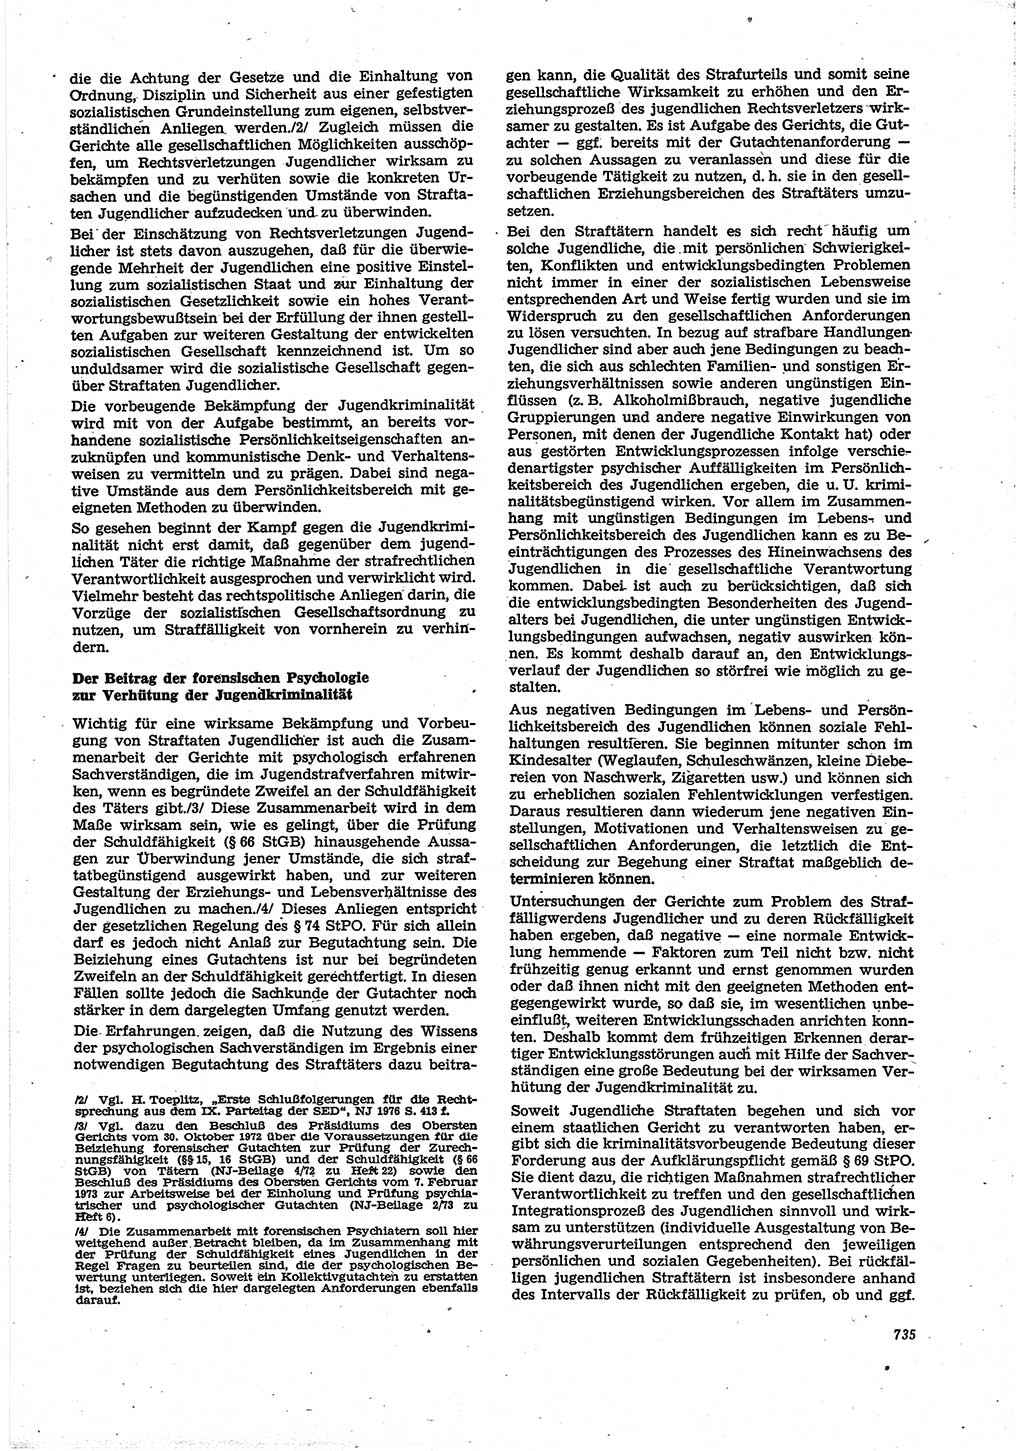 Neue Justiz (NJ), Zeitschrift für Recht und Rechtswissenschaft [Deutsche Demokratische Republik (DDR)], 30. Jahrgang 1976, Seite 735 (NJ DDR 1976, S. 735)